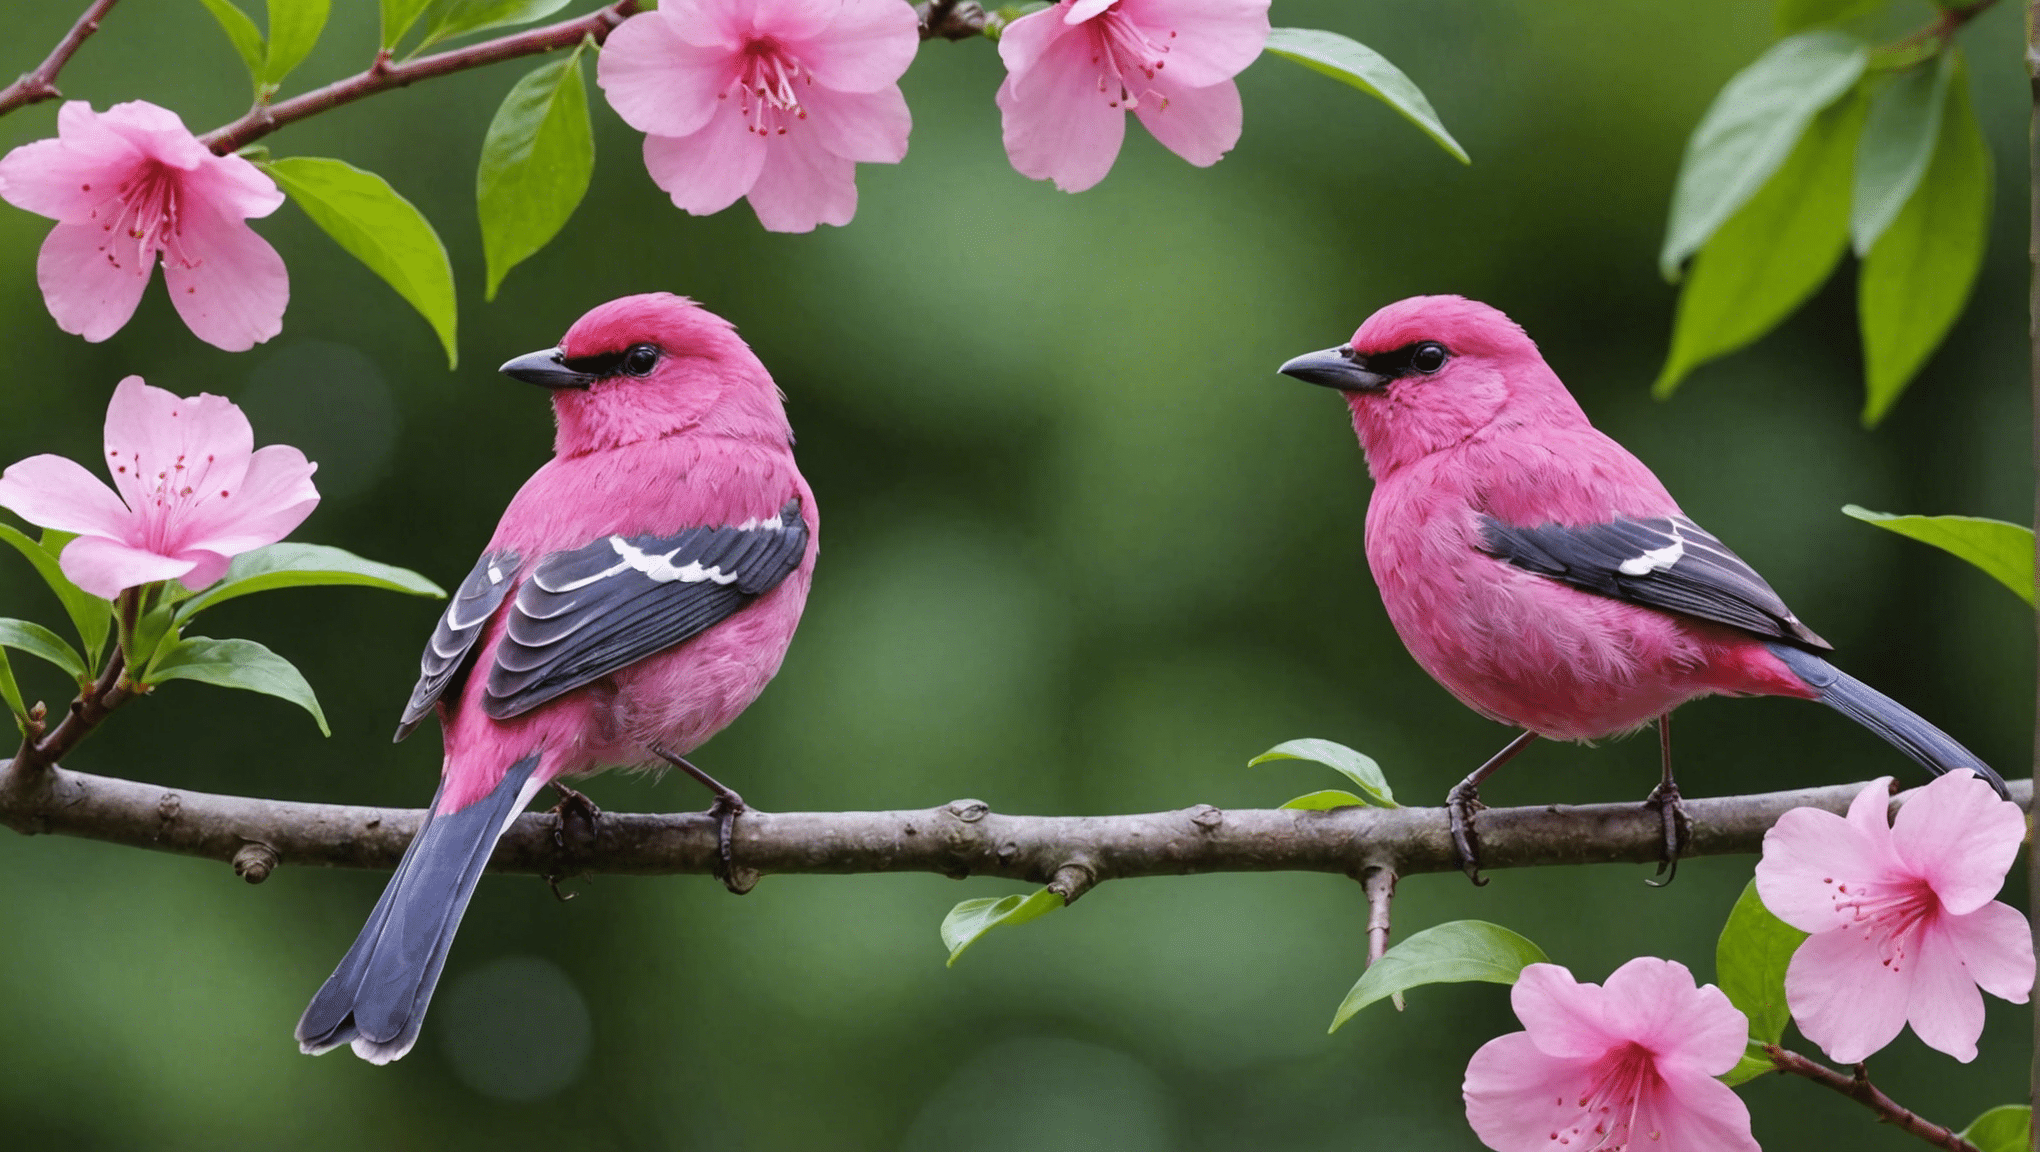 descubra se os pássaros cor-de-rosa são reais com esta intrigante discussão sobre a existência dos pássaros cor-de-rosa, suas características e seu significado no mundo natural.